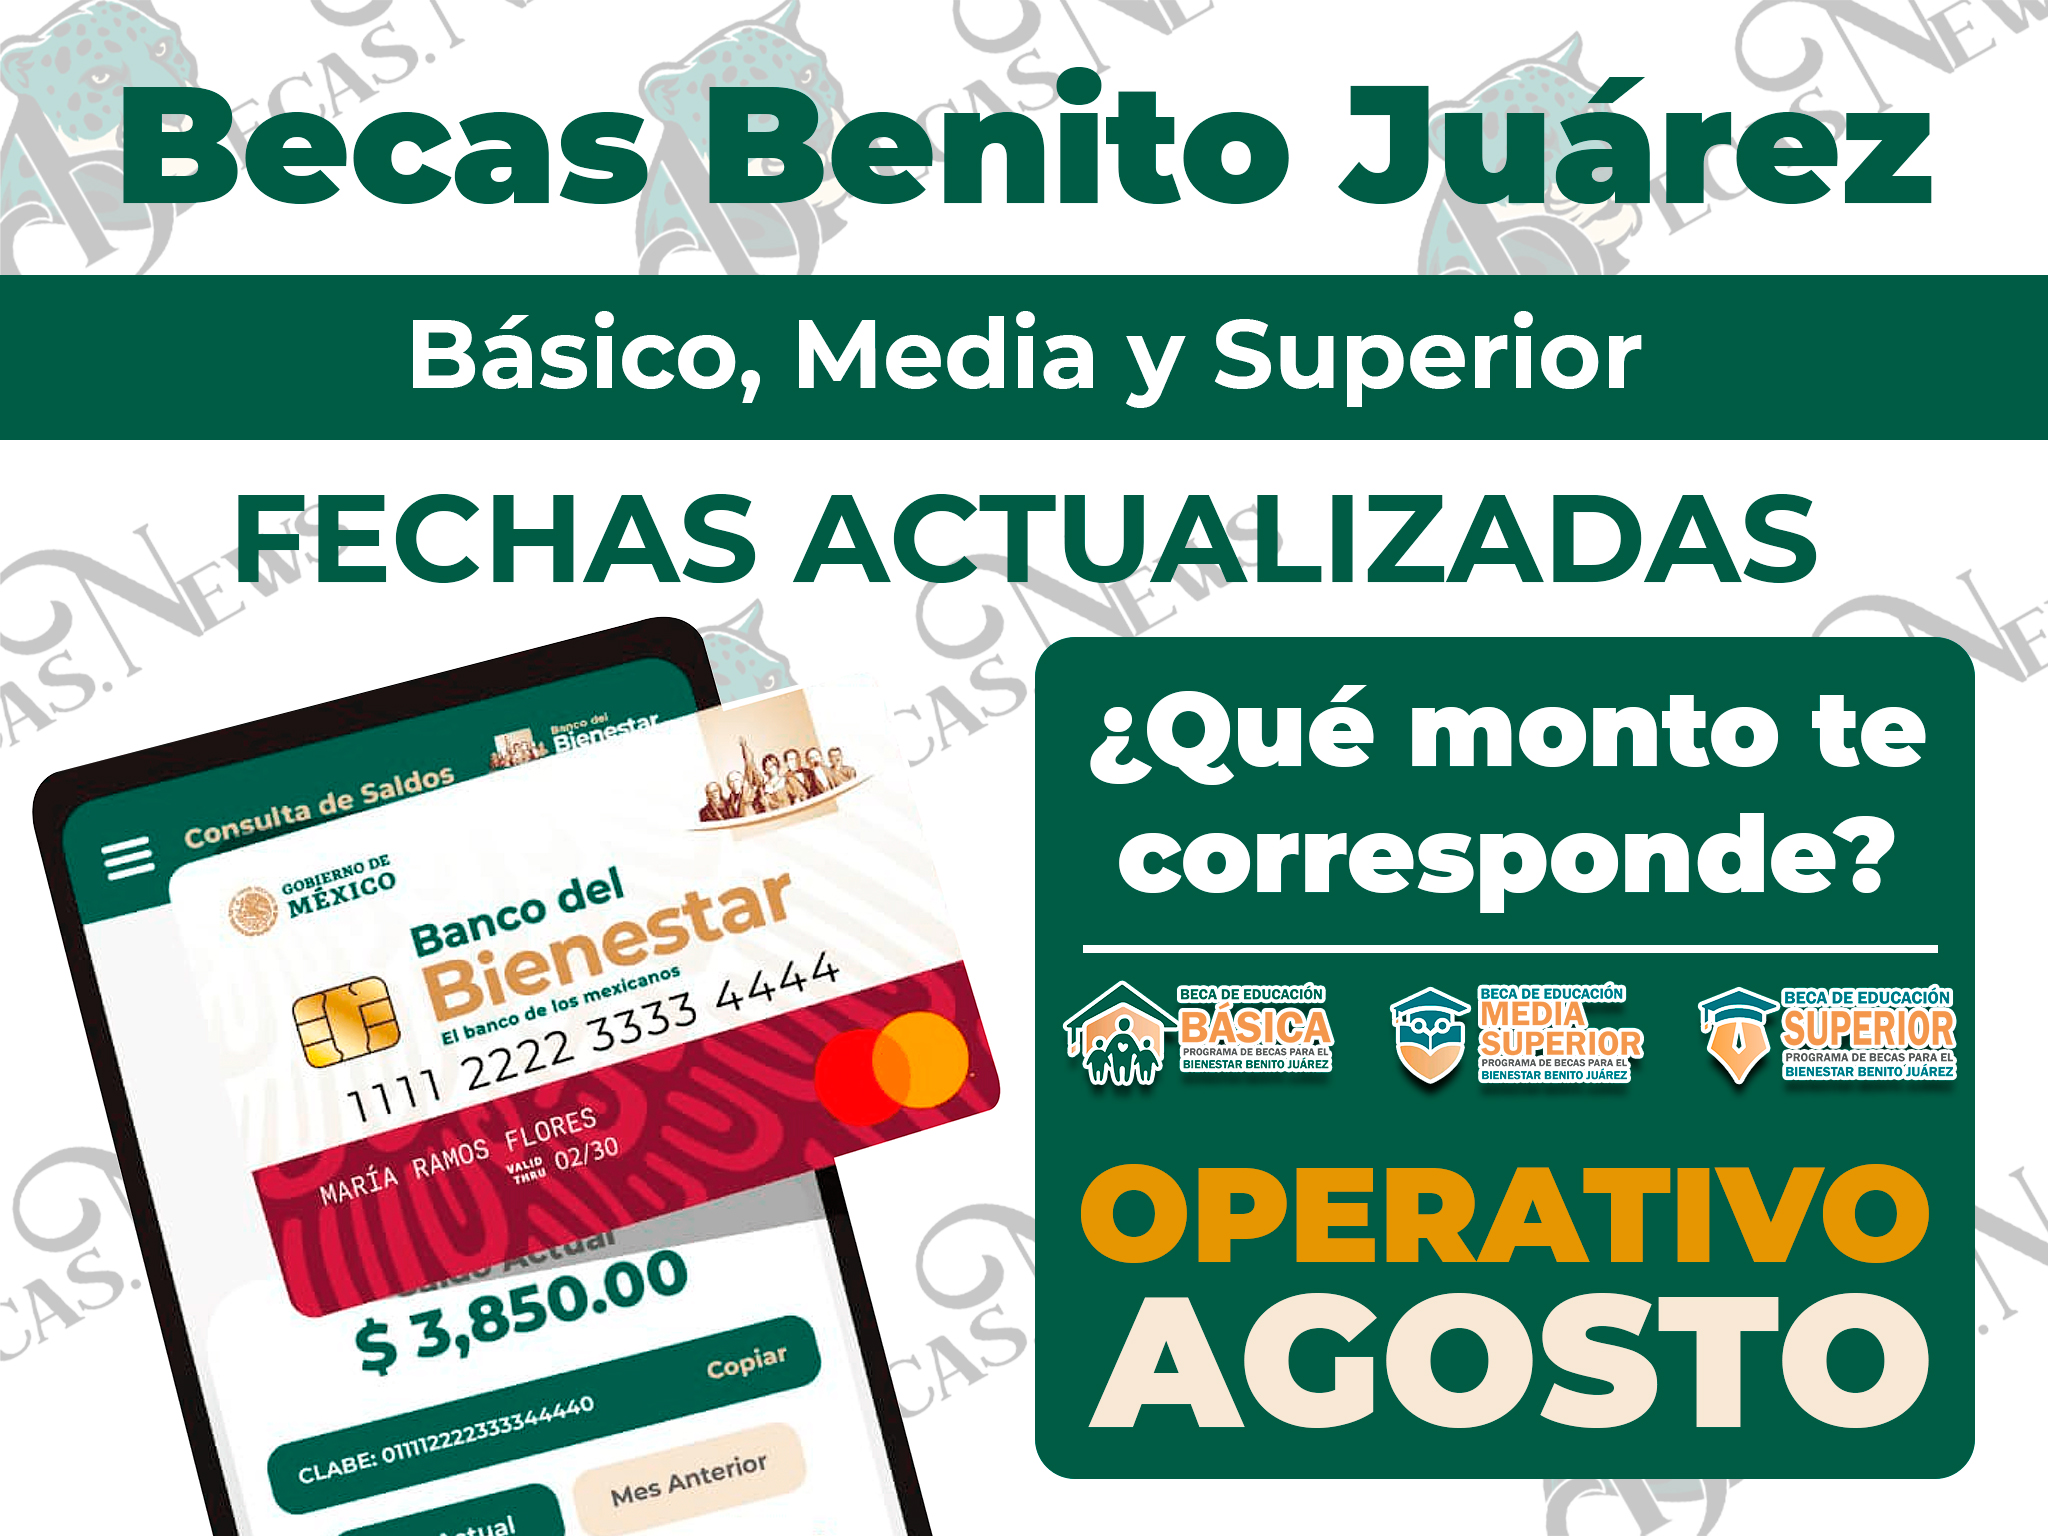 ¿Qué cantidad te corresponde cobrar durante el mes de AGOSTO?, consulta ya mismo aquí: Becas Benito Juárez